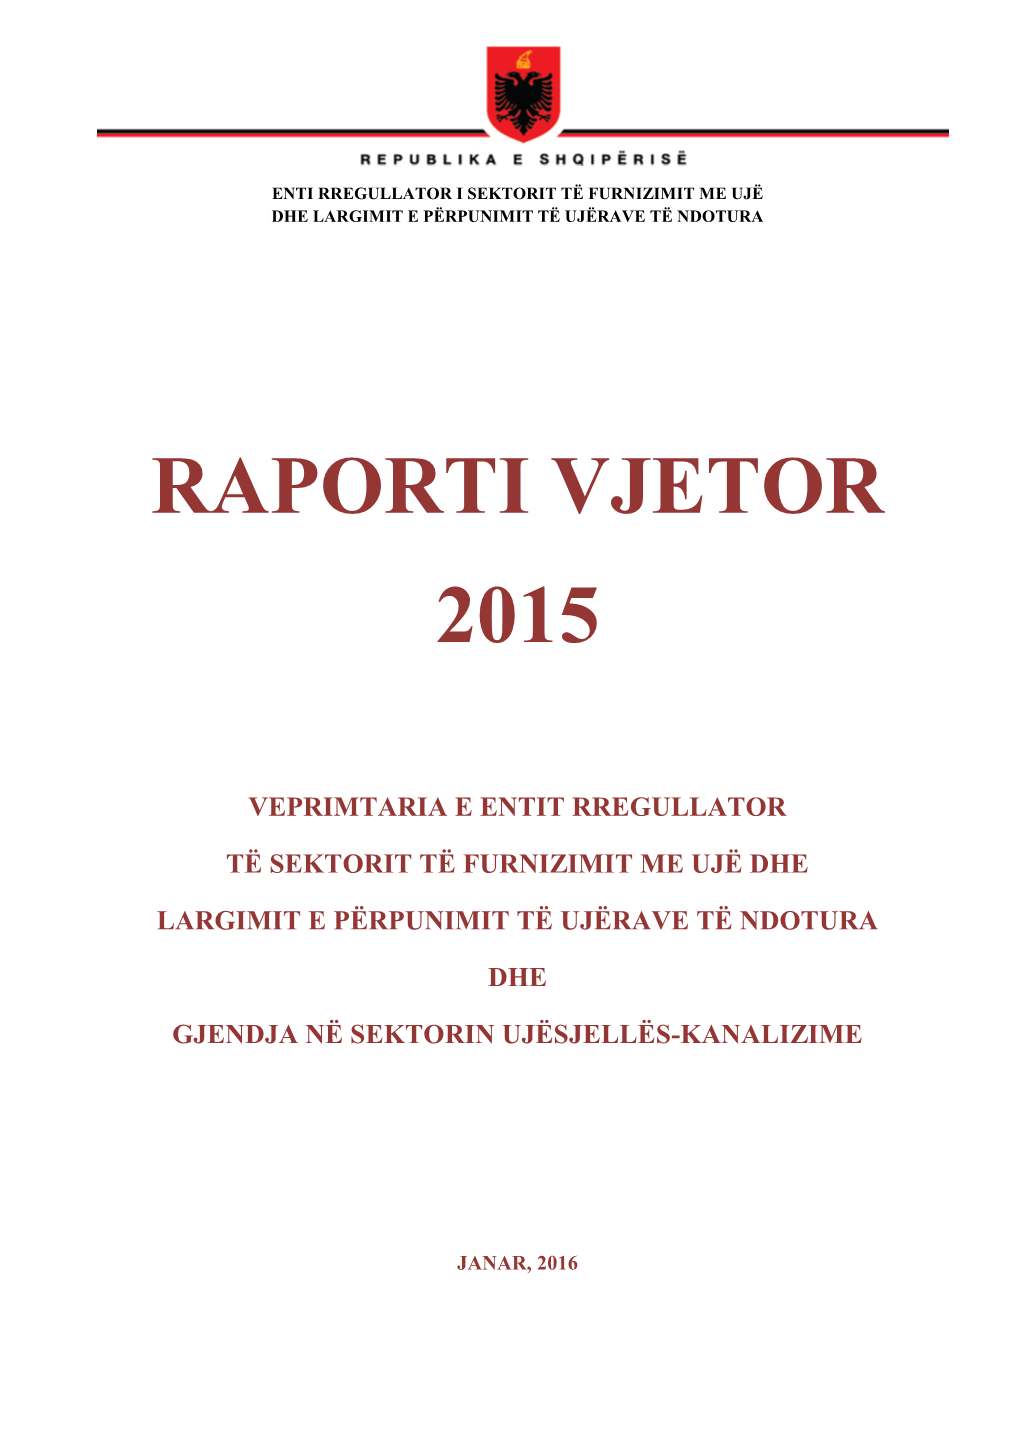 Raporti Vjetor 2015